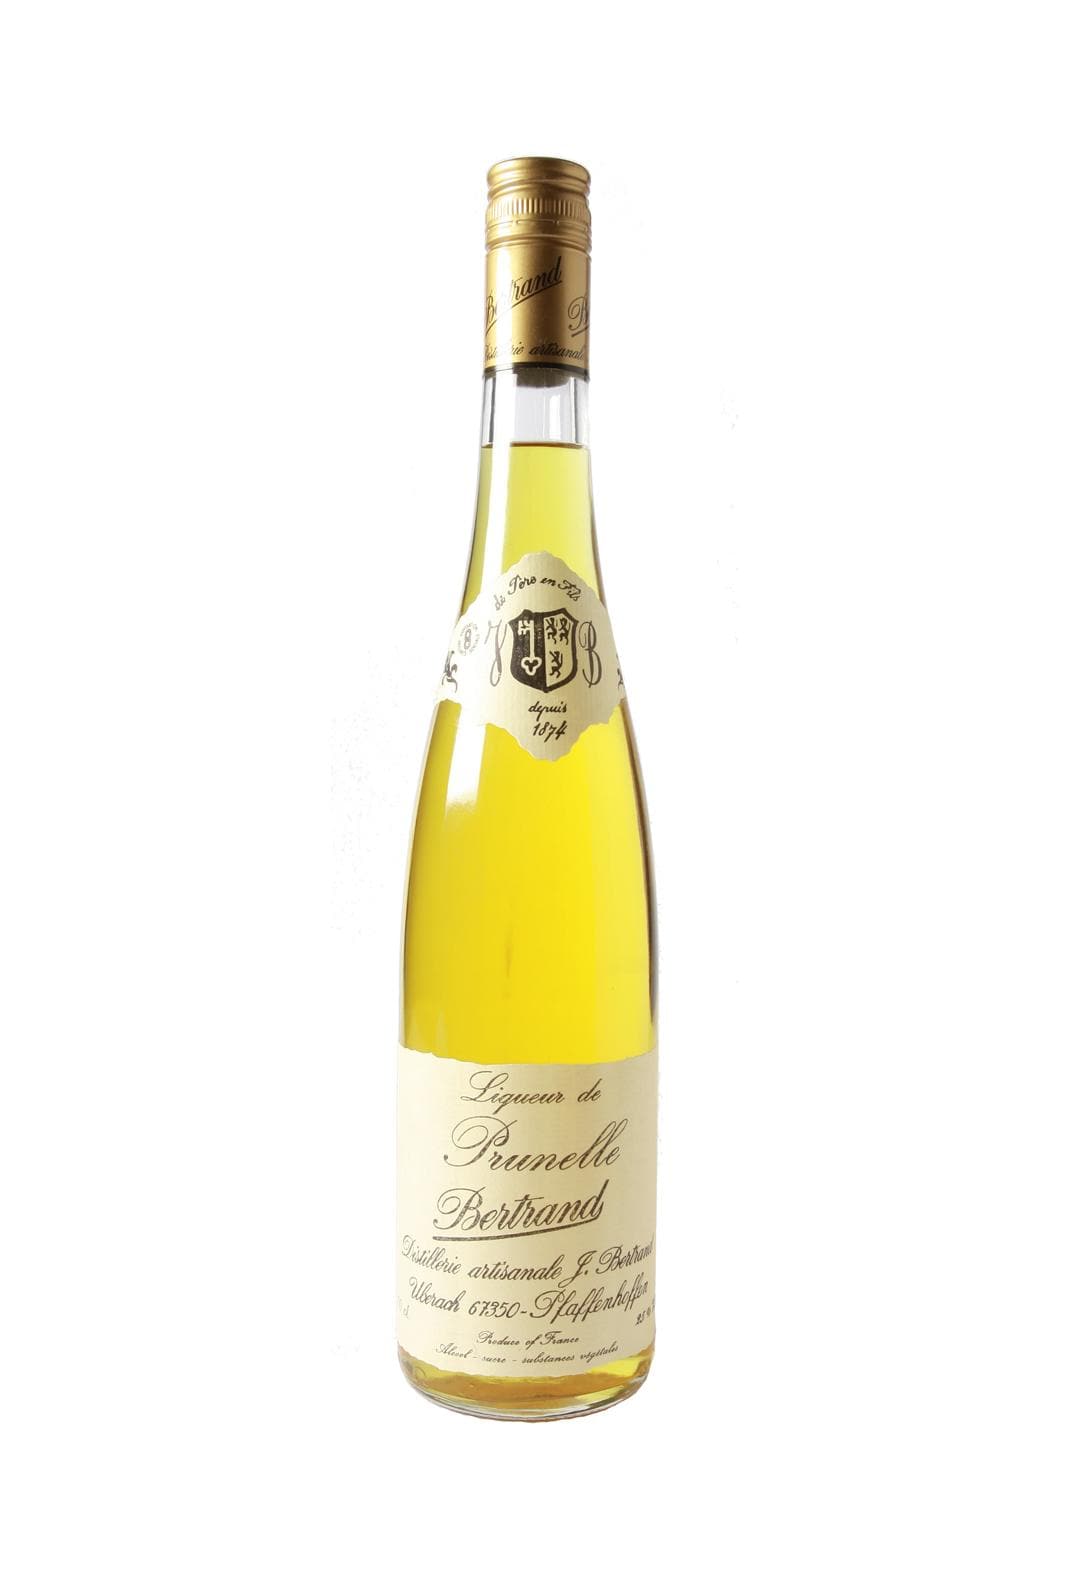 Bertrand Liqueur de Prunelle (Sloe Berry) 25% 700ml | Liqueurs | Shop online at Spirits of France